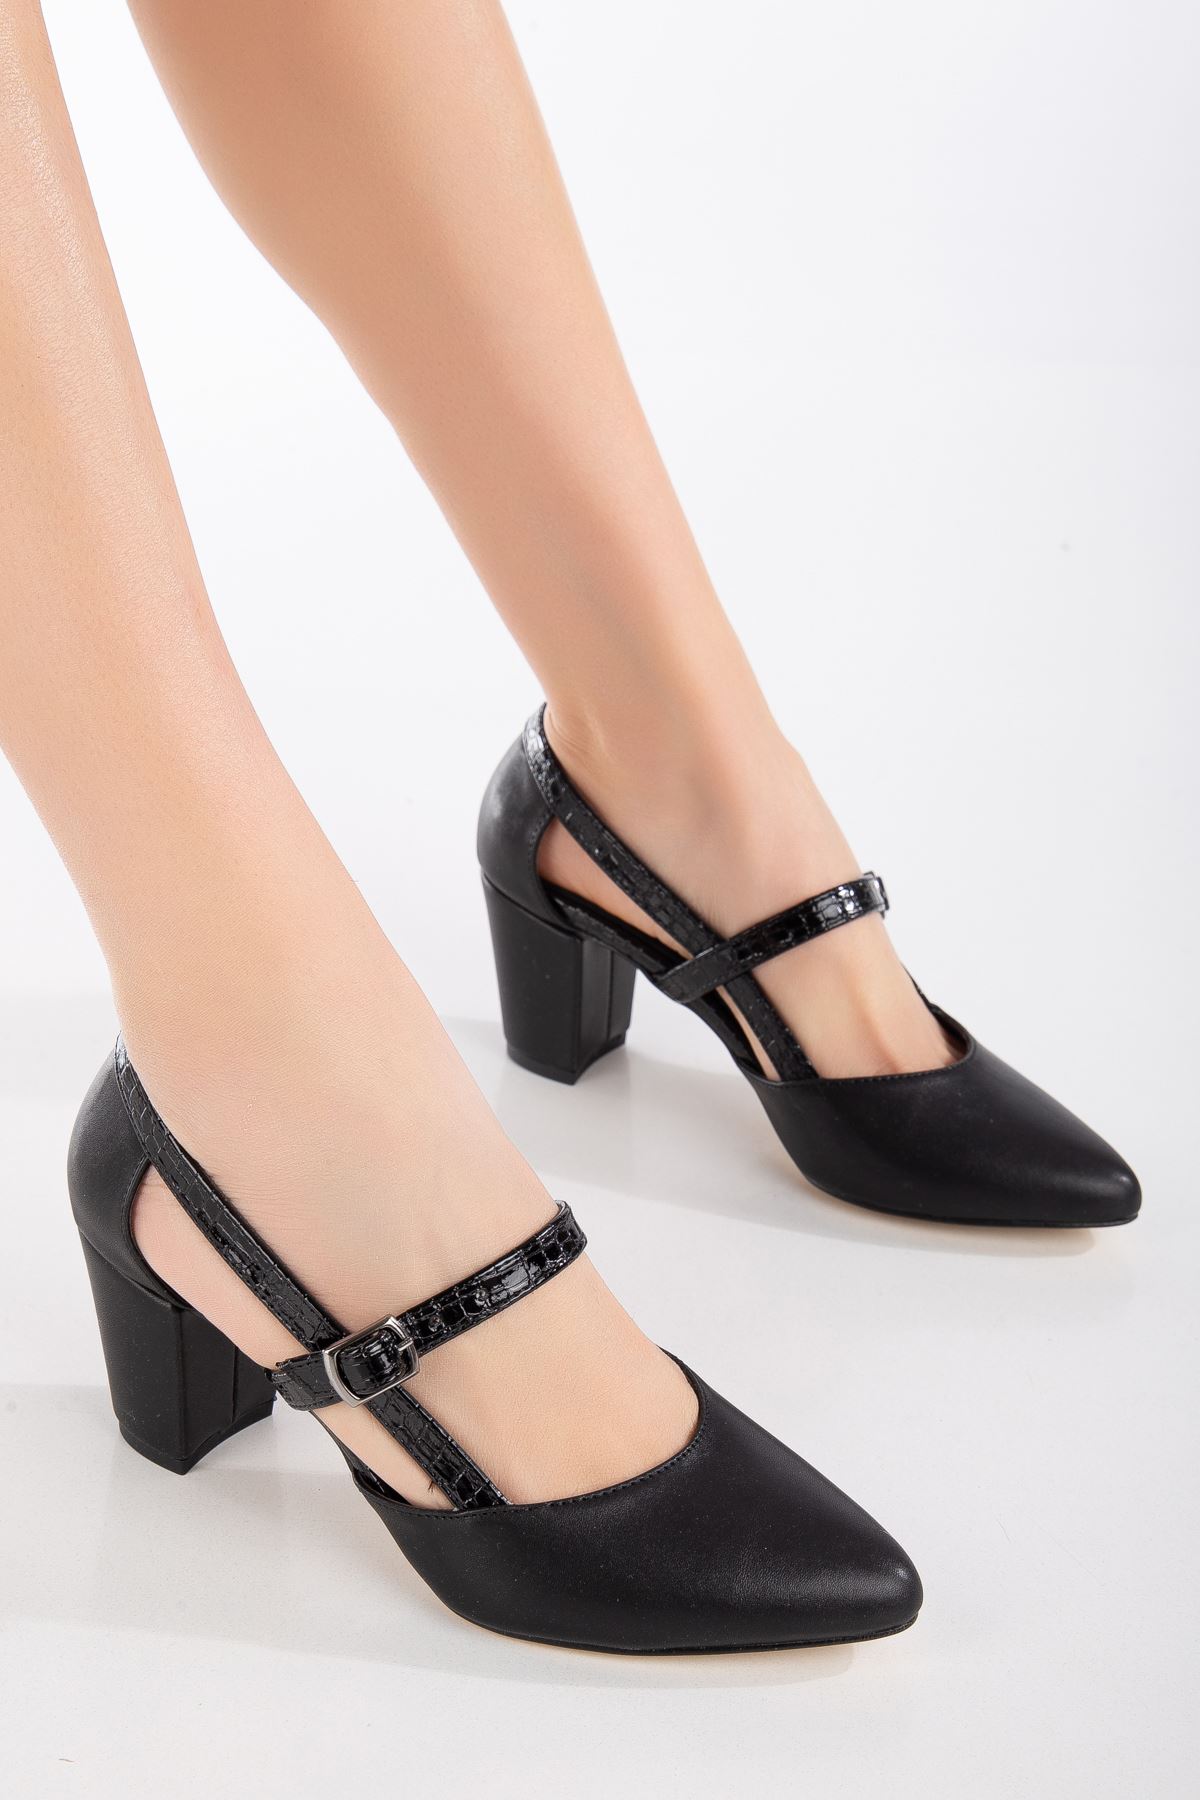 Maricis Siyah Cilt - Siyah Crocodile Detaylı Topuklu Kadın Ayakkabı